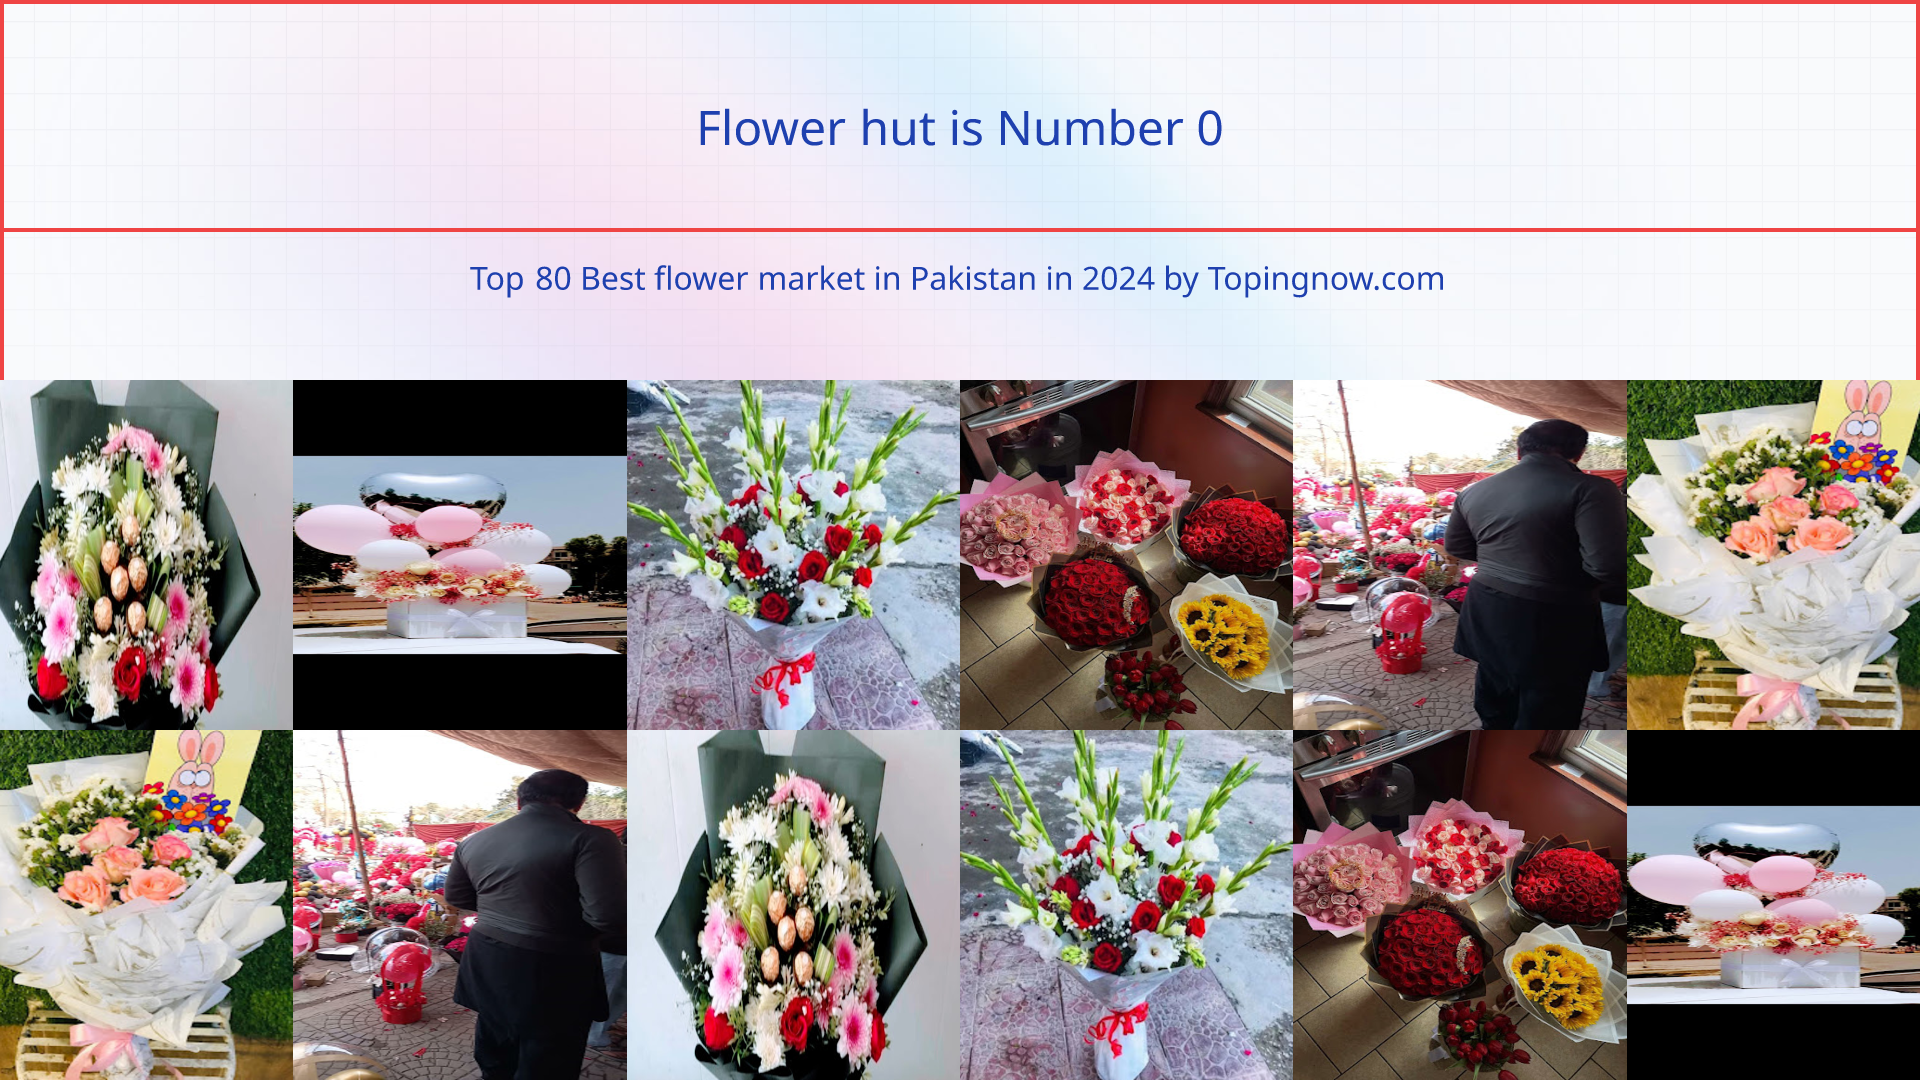 Flower hut: Top 80 Best flower market in Pakistan in 2024